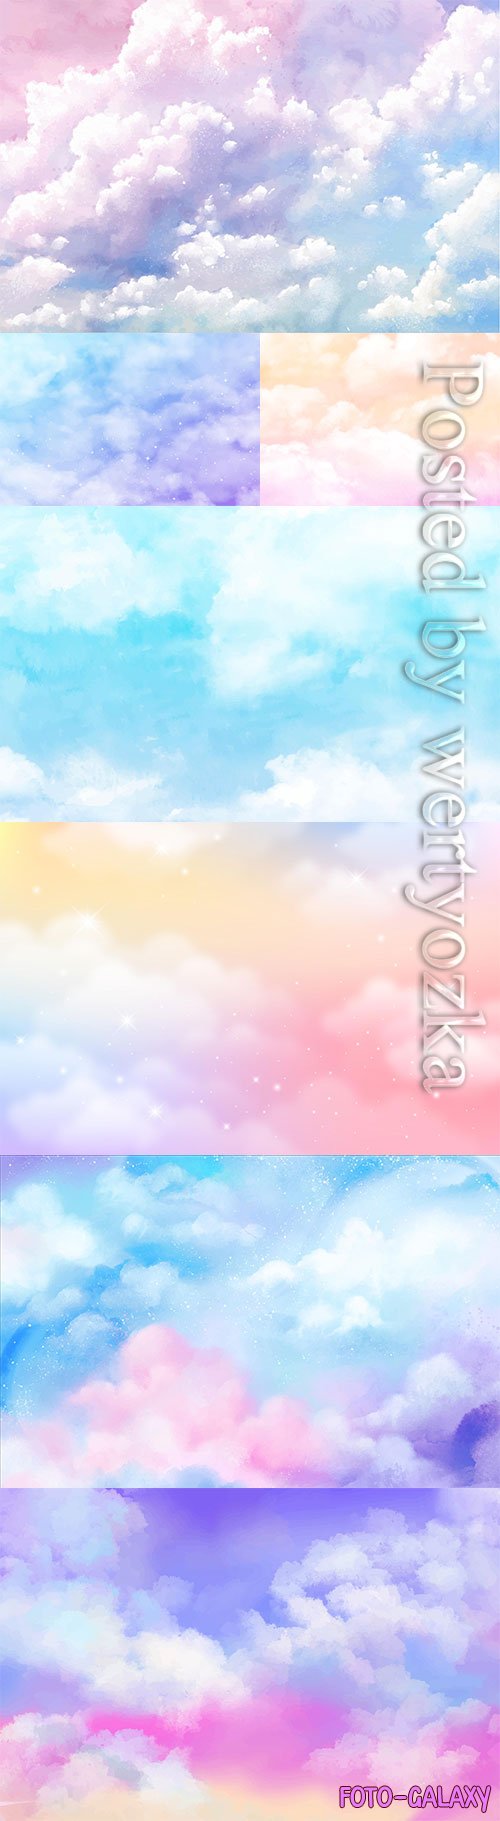 Gradient pastel sky vector background